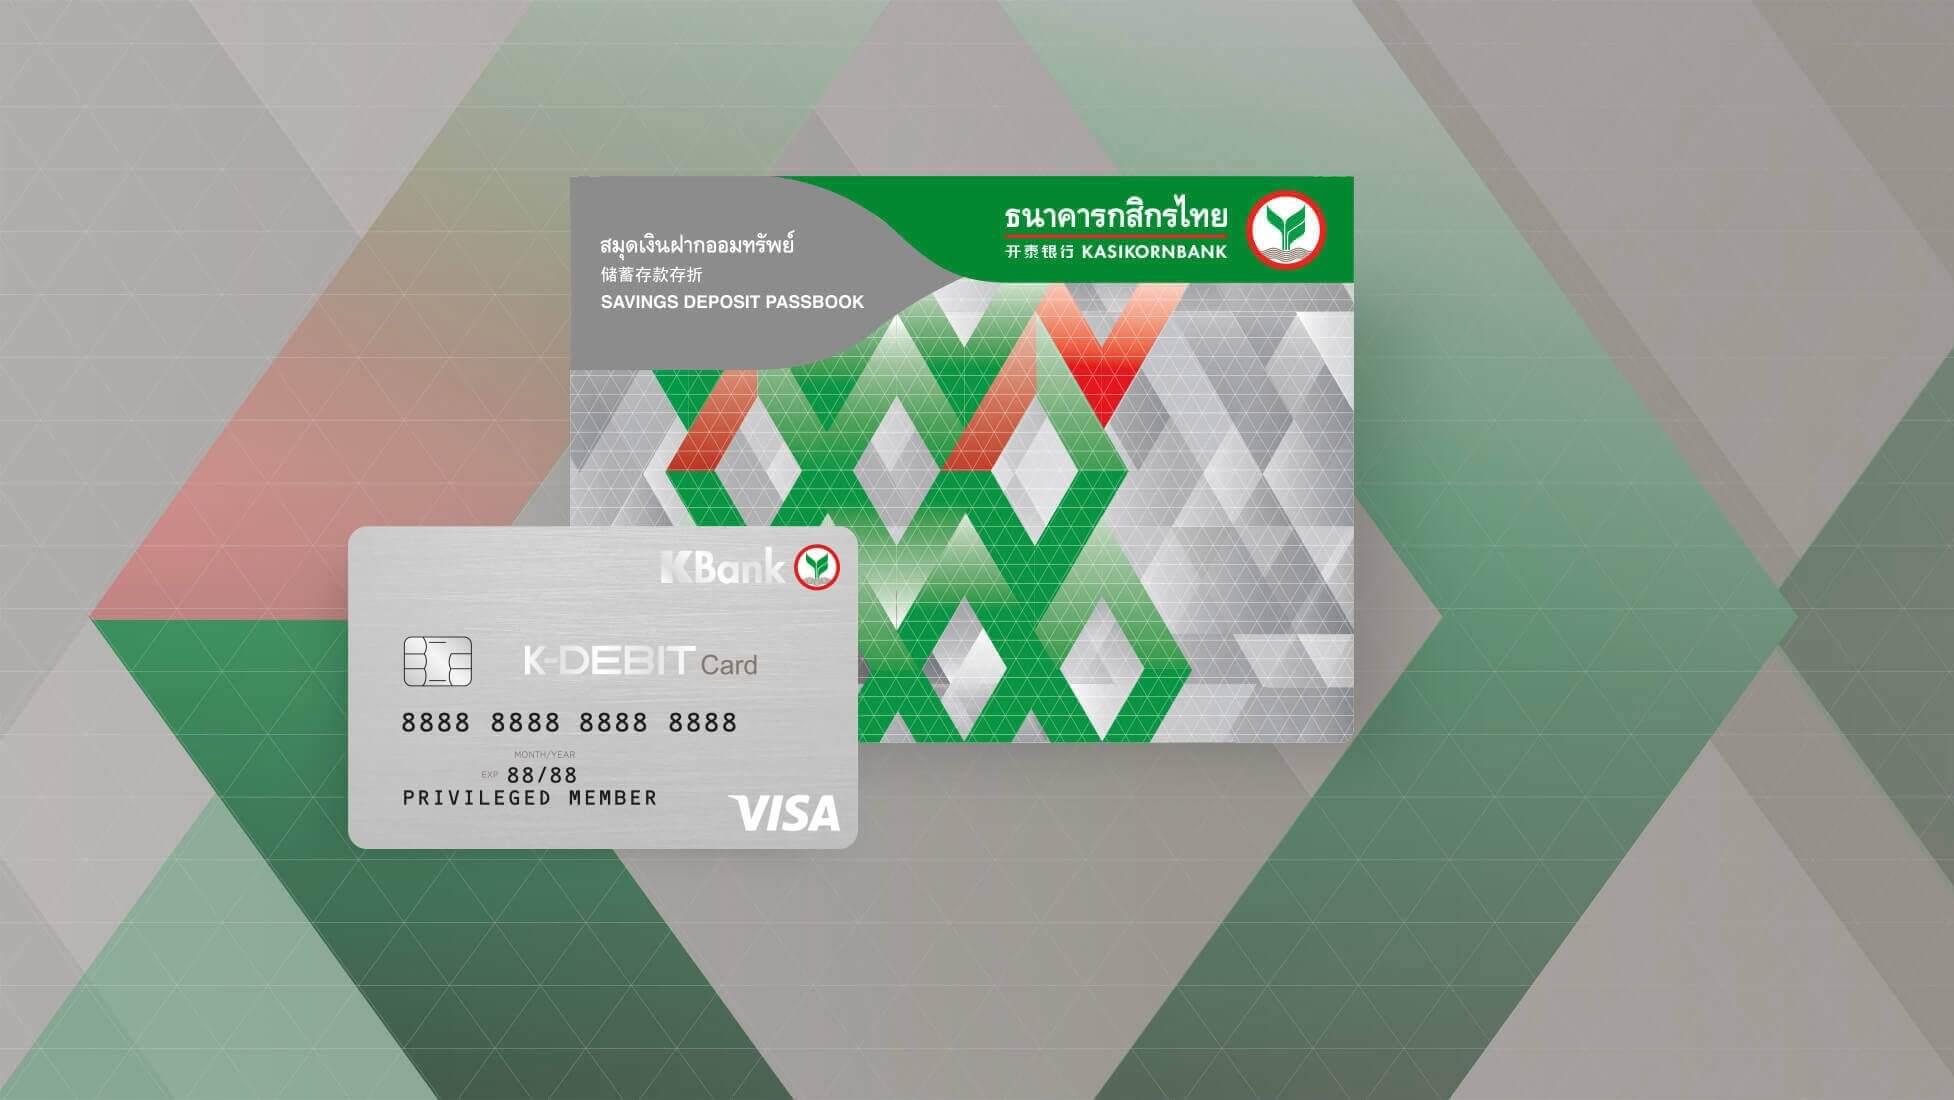 สมัครบัตร Atm กสิกรใหม่ราคากี่บาท มีกี่แบบ และใช้อะไรบ้าง ดูจุดเด่นบัตร 66  - Thaiconsulatechicago.Org เปรียบเทียบแหล่งกู้เงินด่วนได้จริงผ่านแอพยืมเงิน  การกู้เงินกับธนาคาร และการสมัครสินเชื่อส่วนบุคคลอนุมัติง่าย